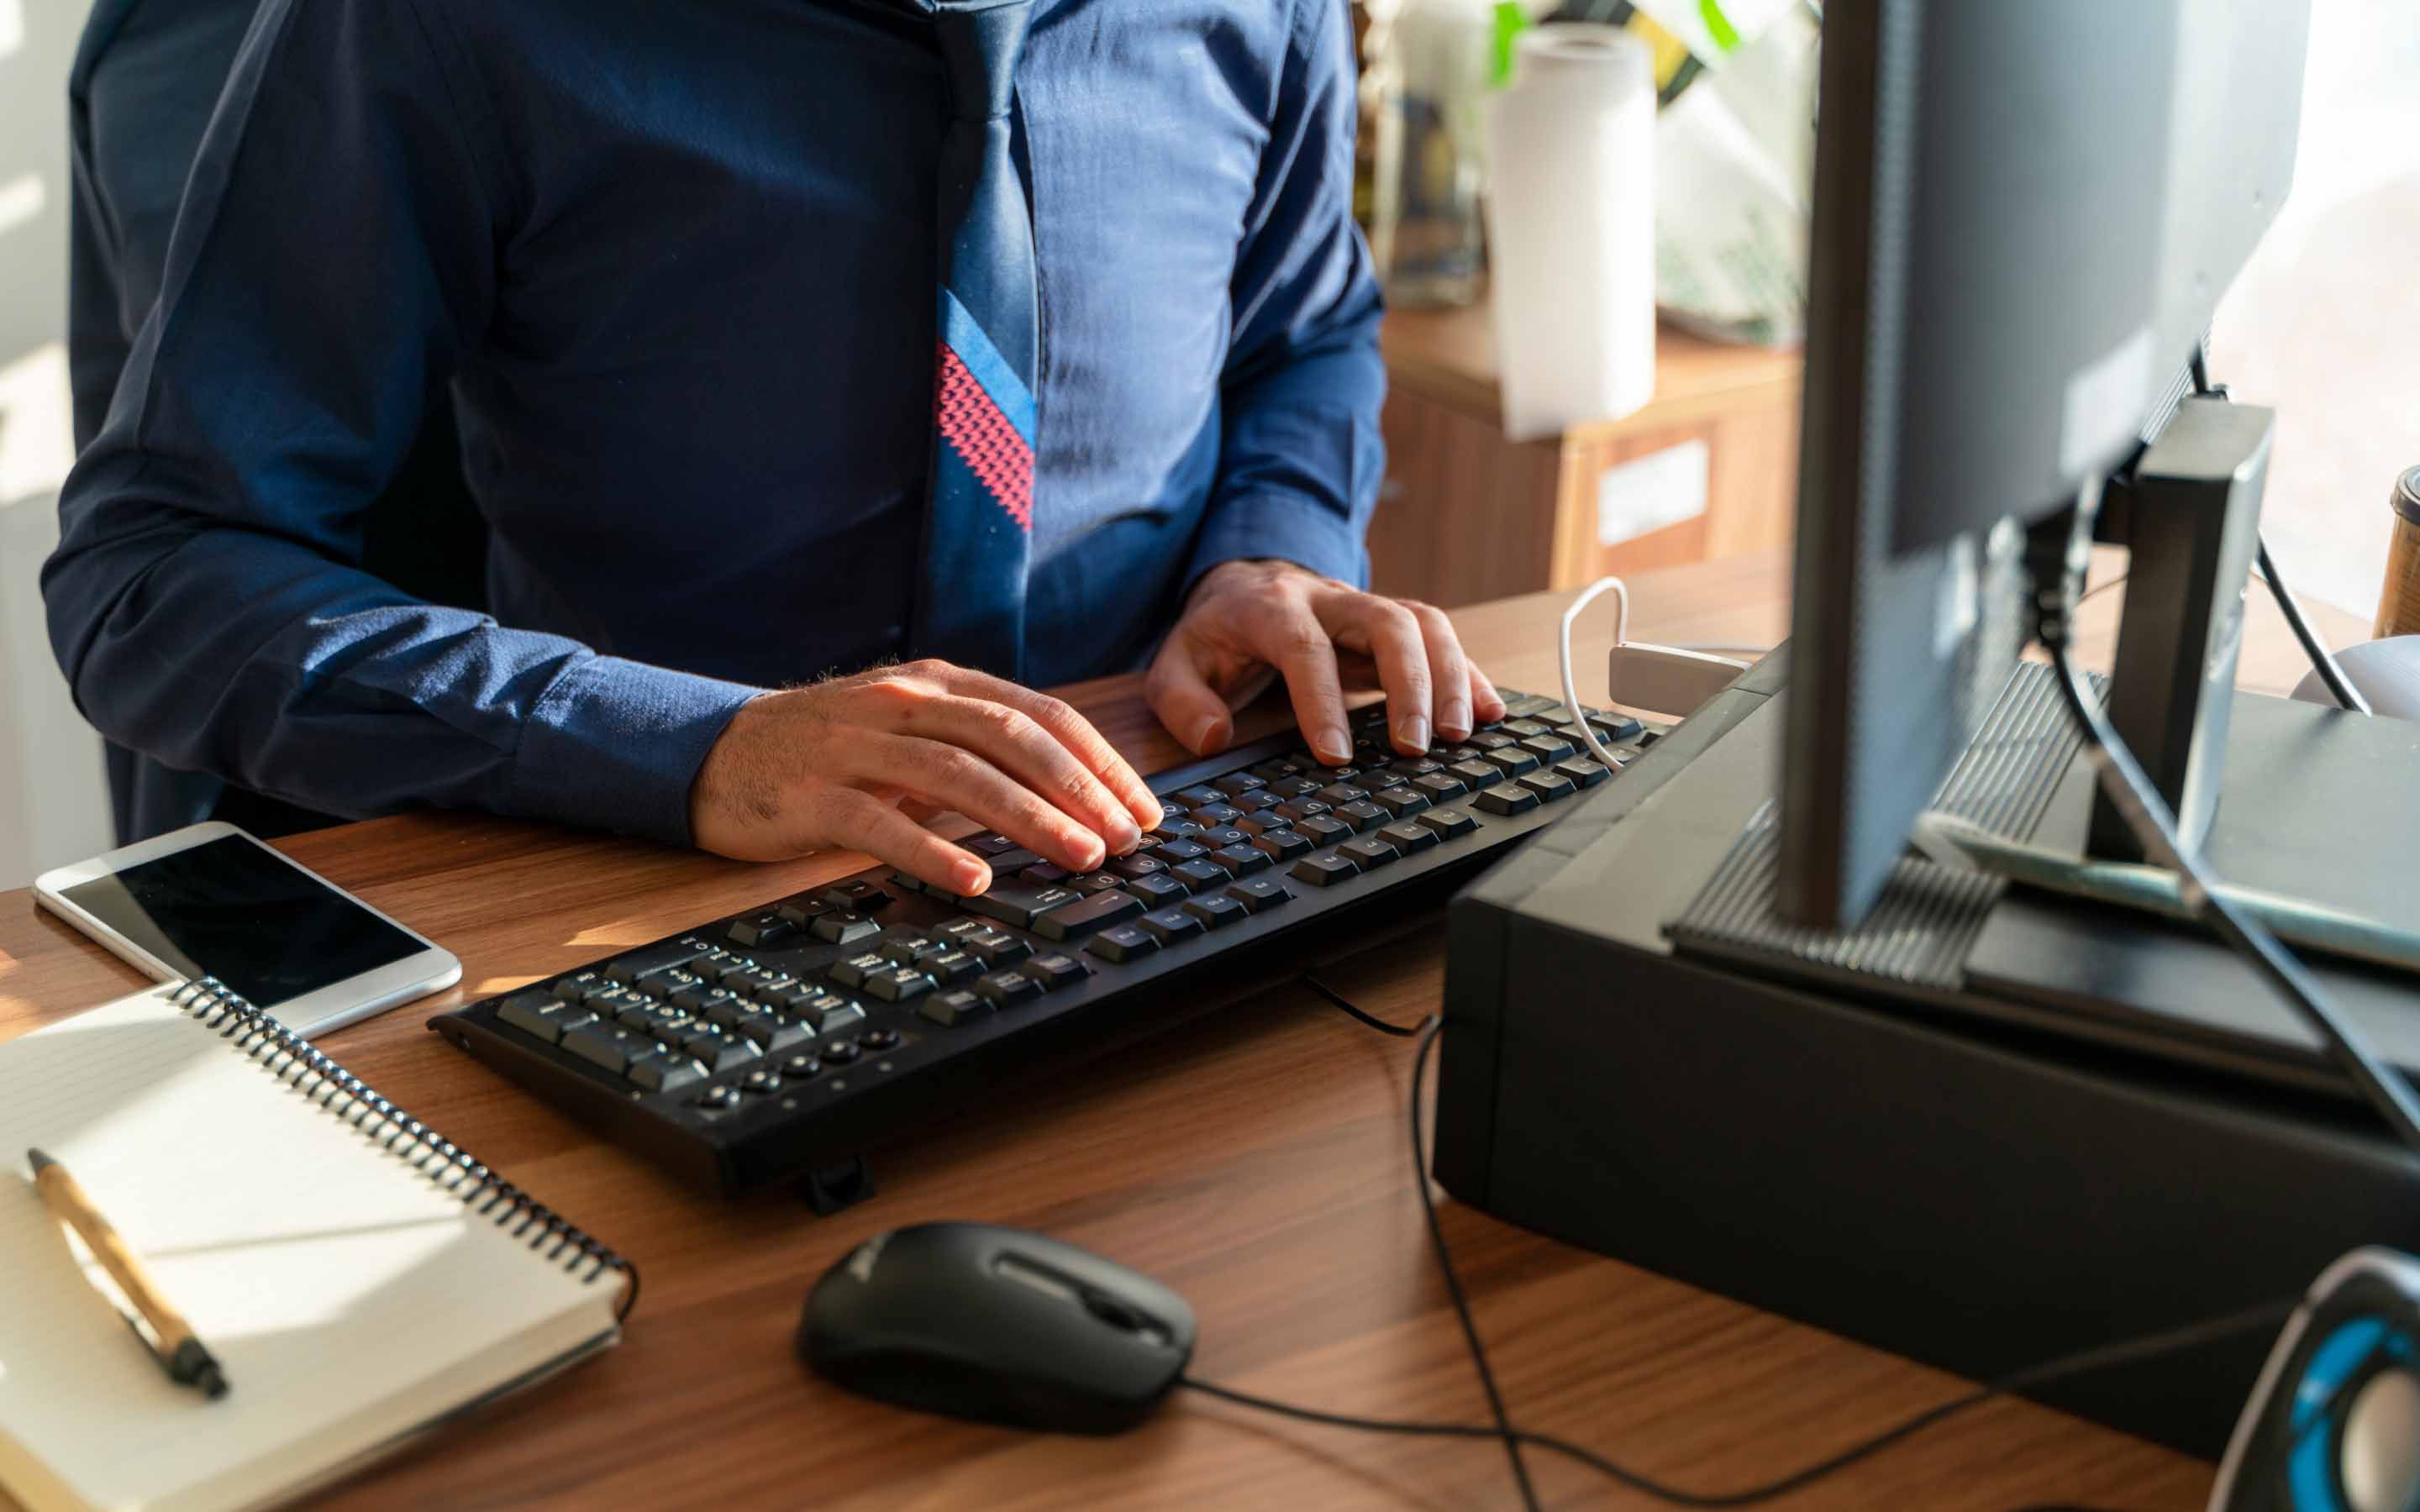 A man's hands type at a desktop keyboard.